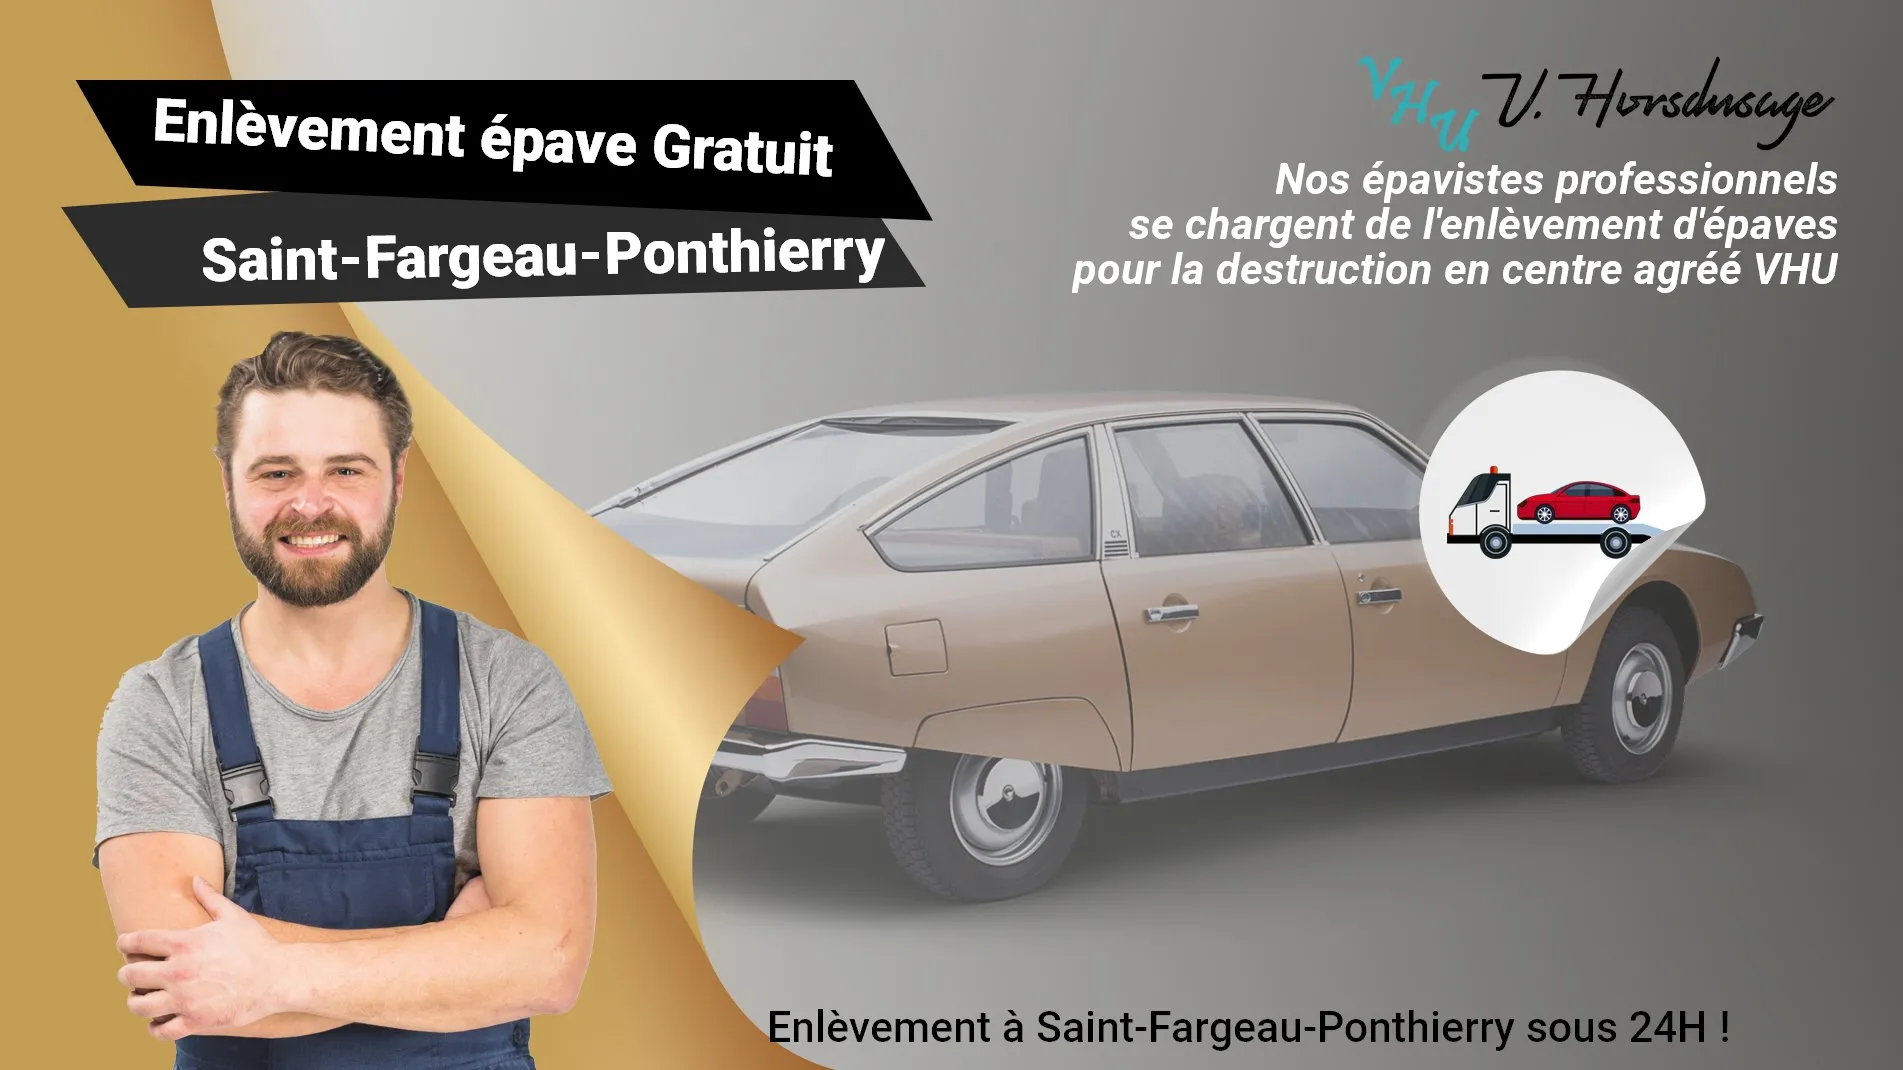 Pour un enlèvement gratuit à Saint-Fargeau-Ponthierry, contactez nos épavistes agréé VHU